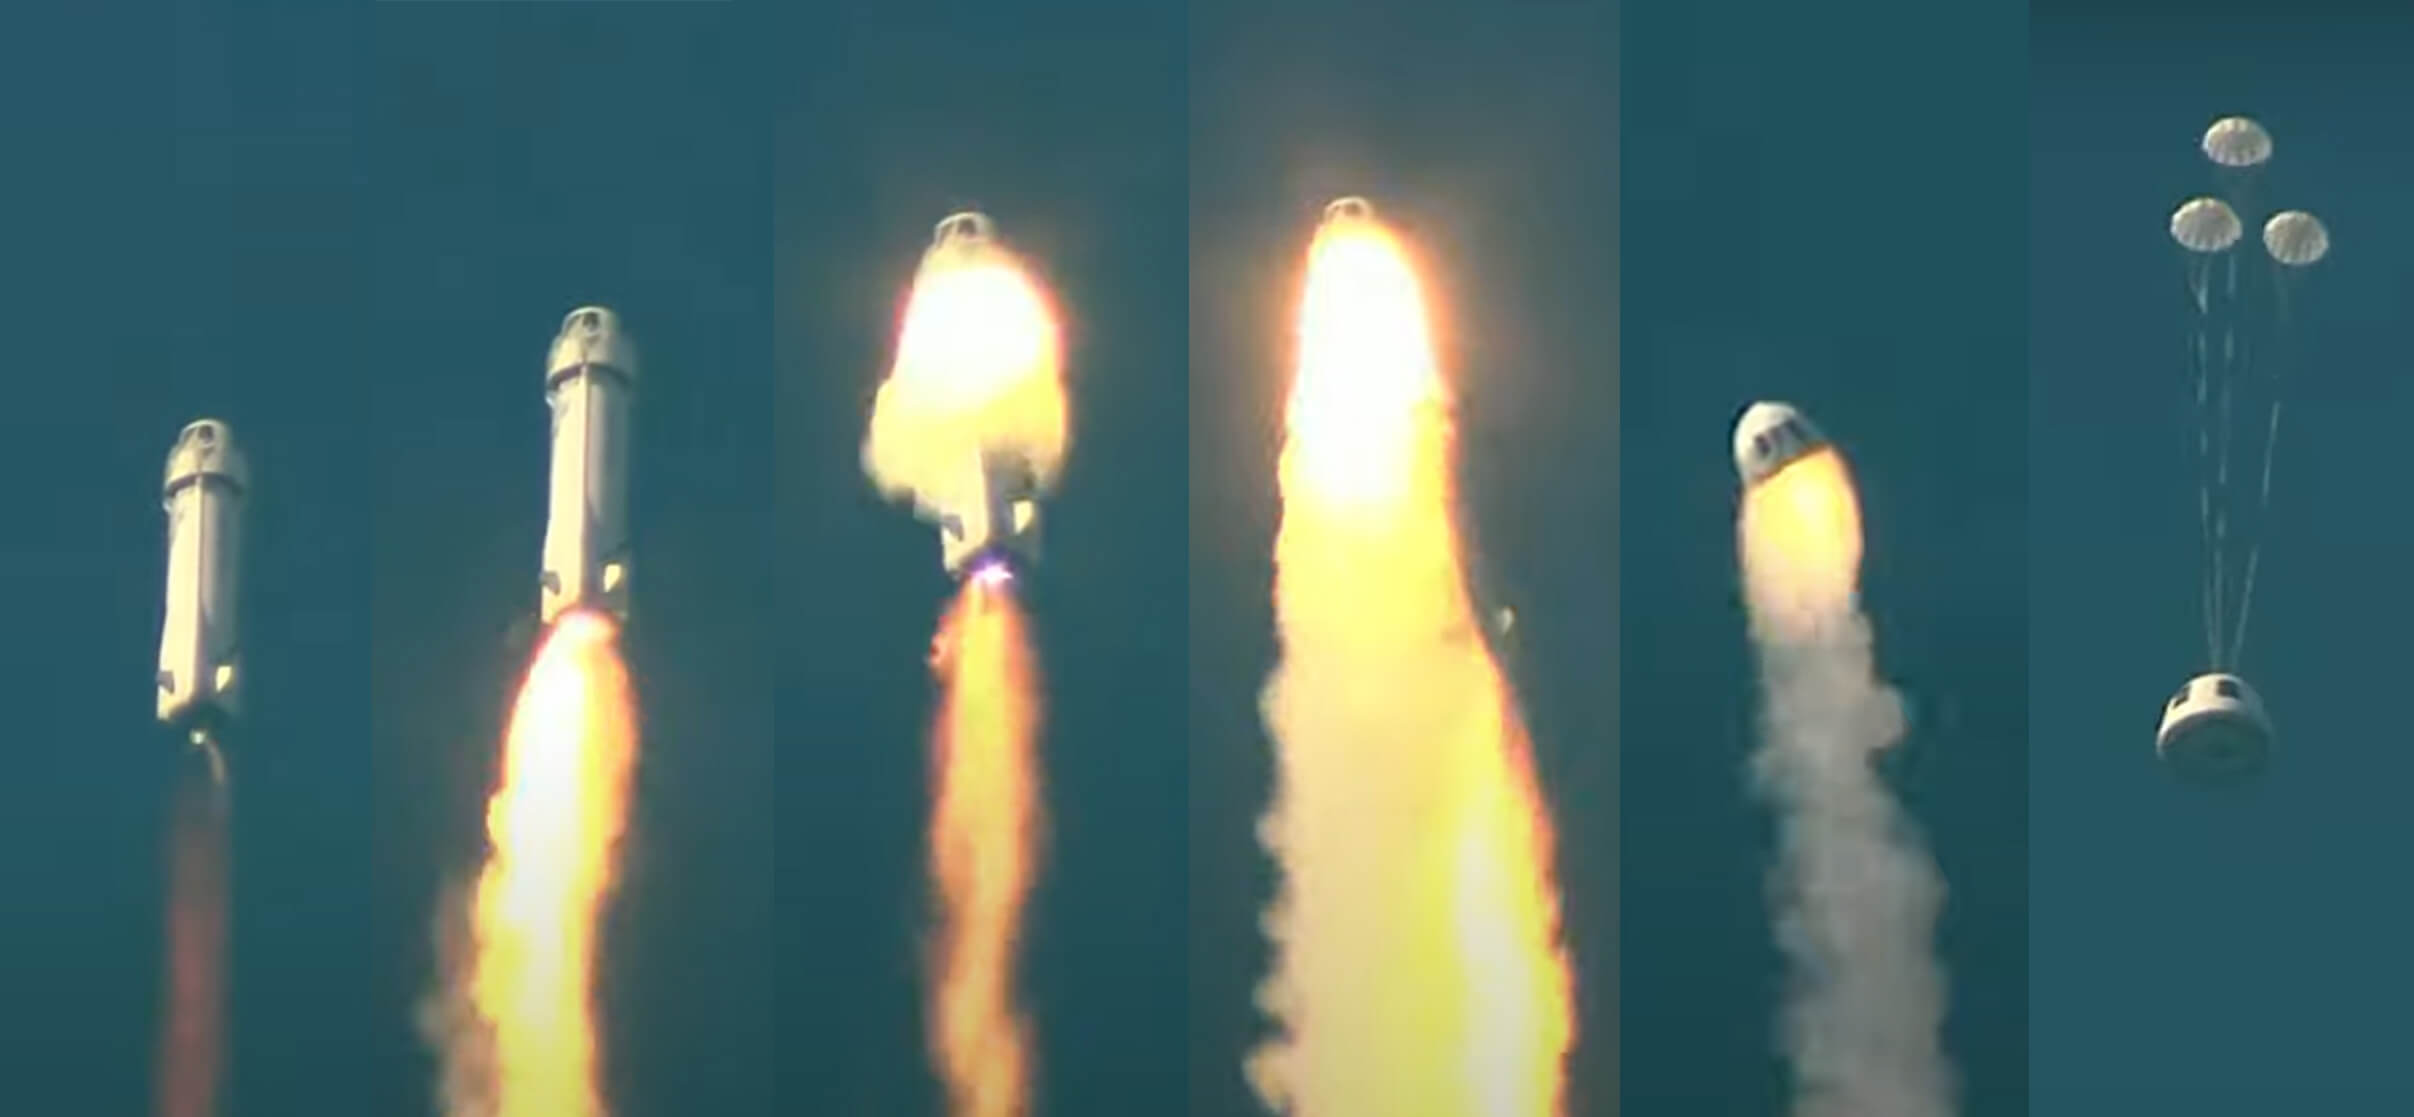 इंजन में आग लगने के बाद ब्लू ओरिजिन रॉकेट लॉन्च विफल